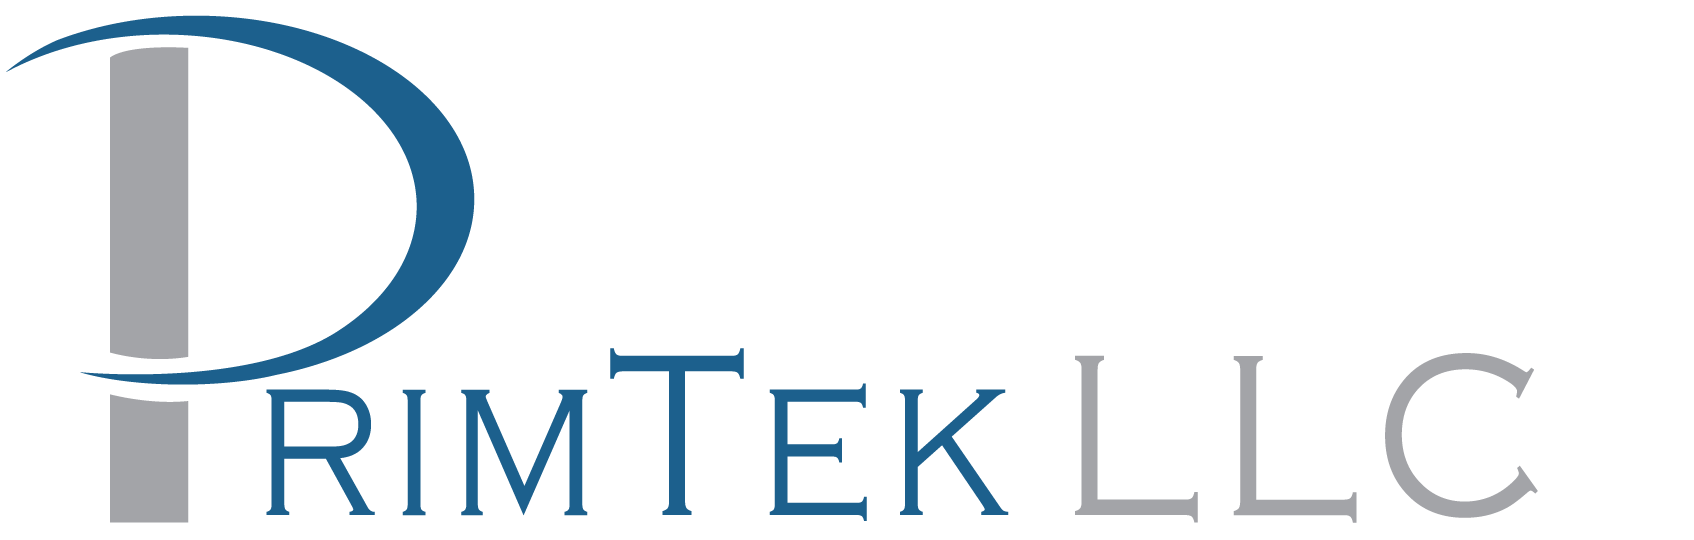 Primtek LLC Legacy Logo